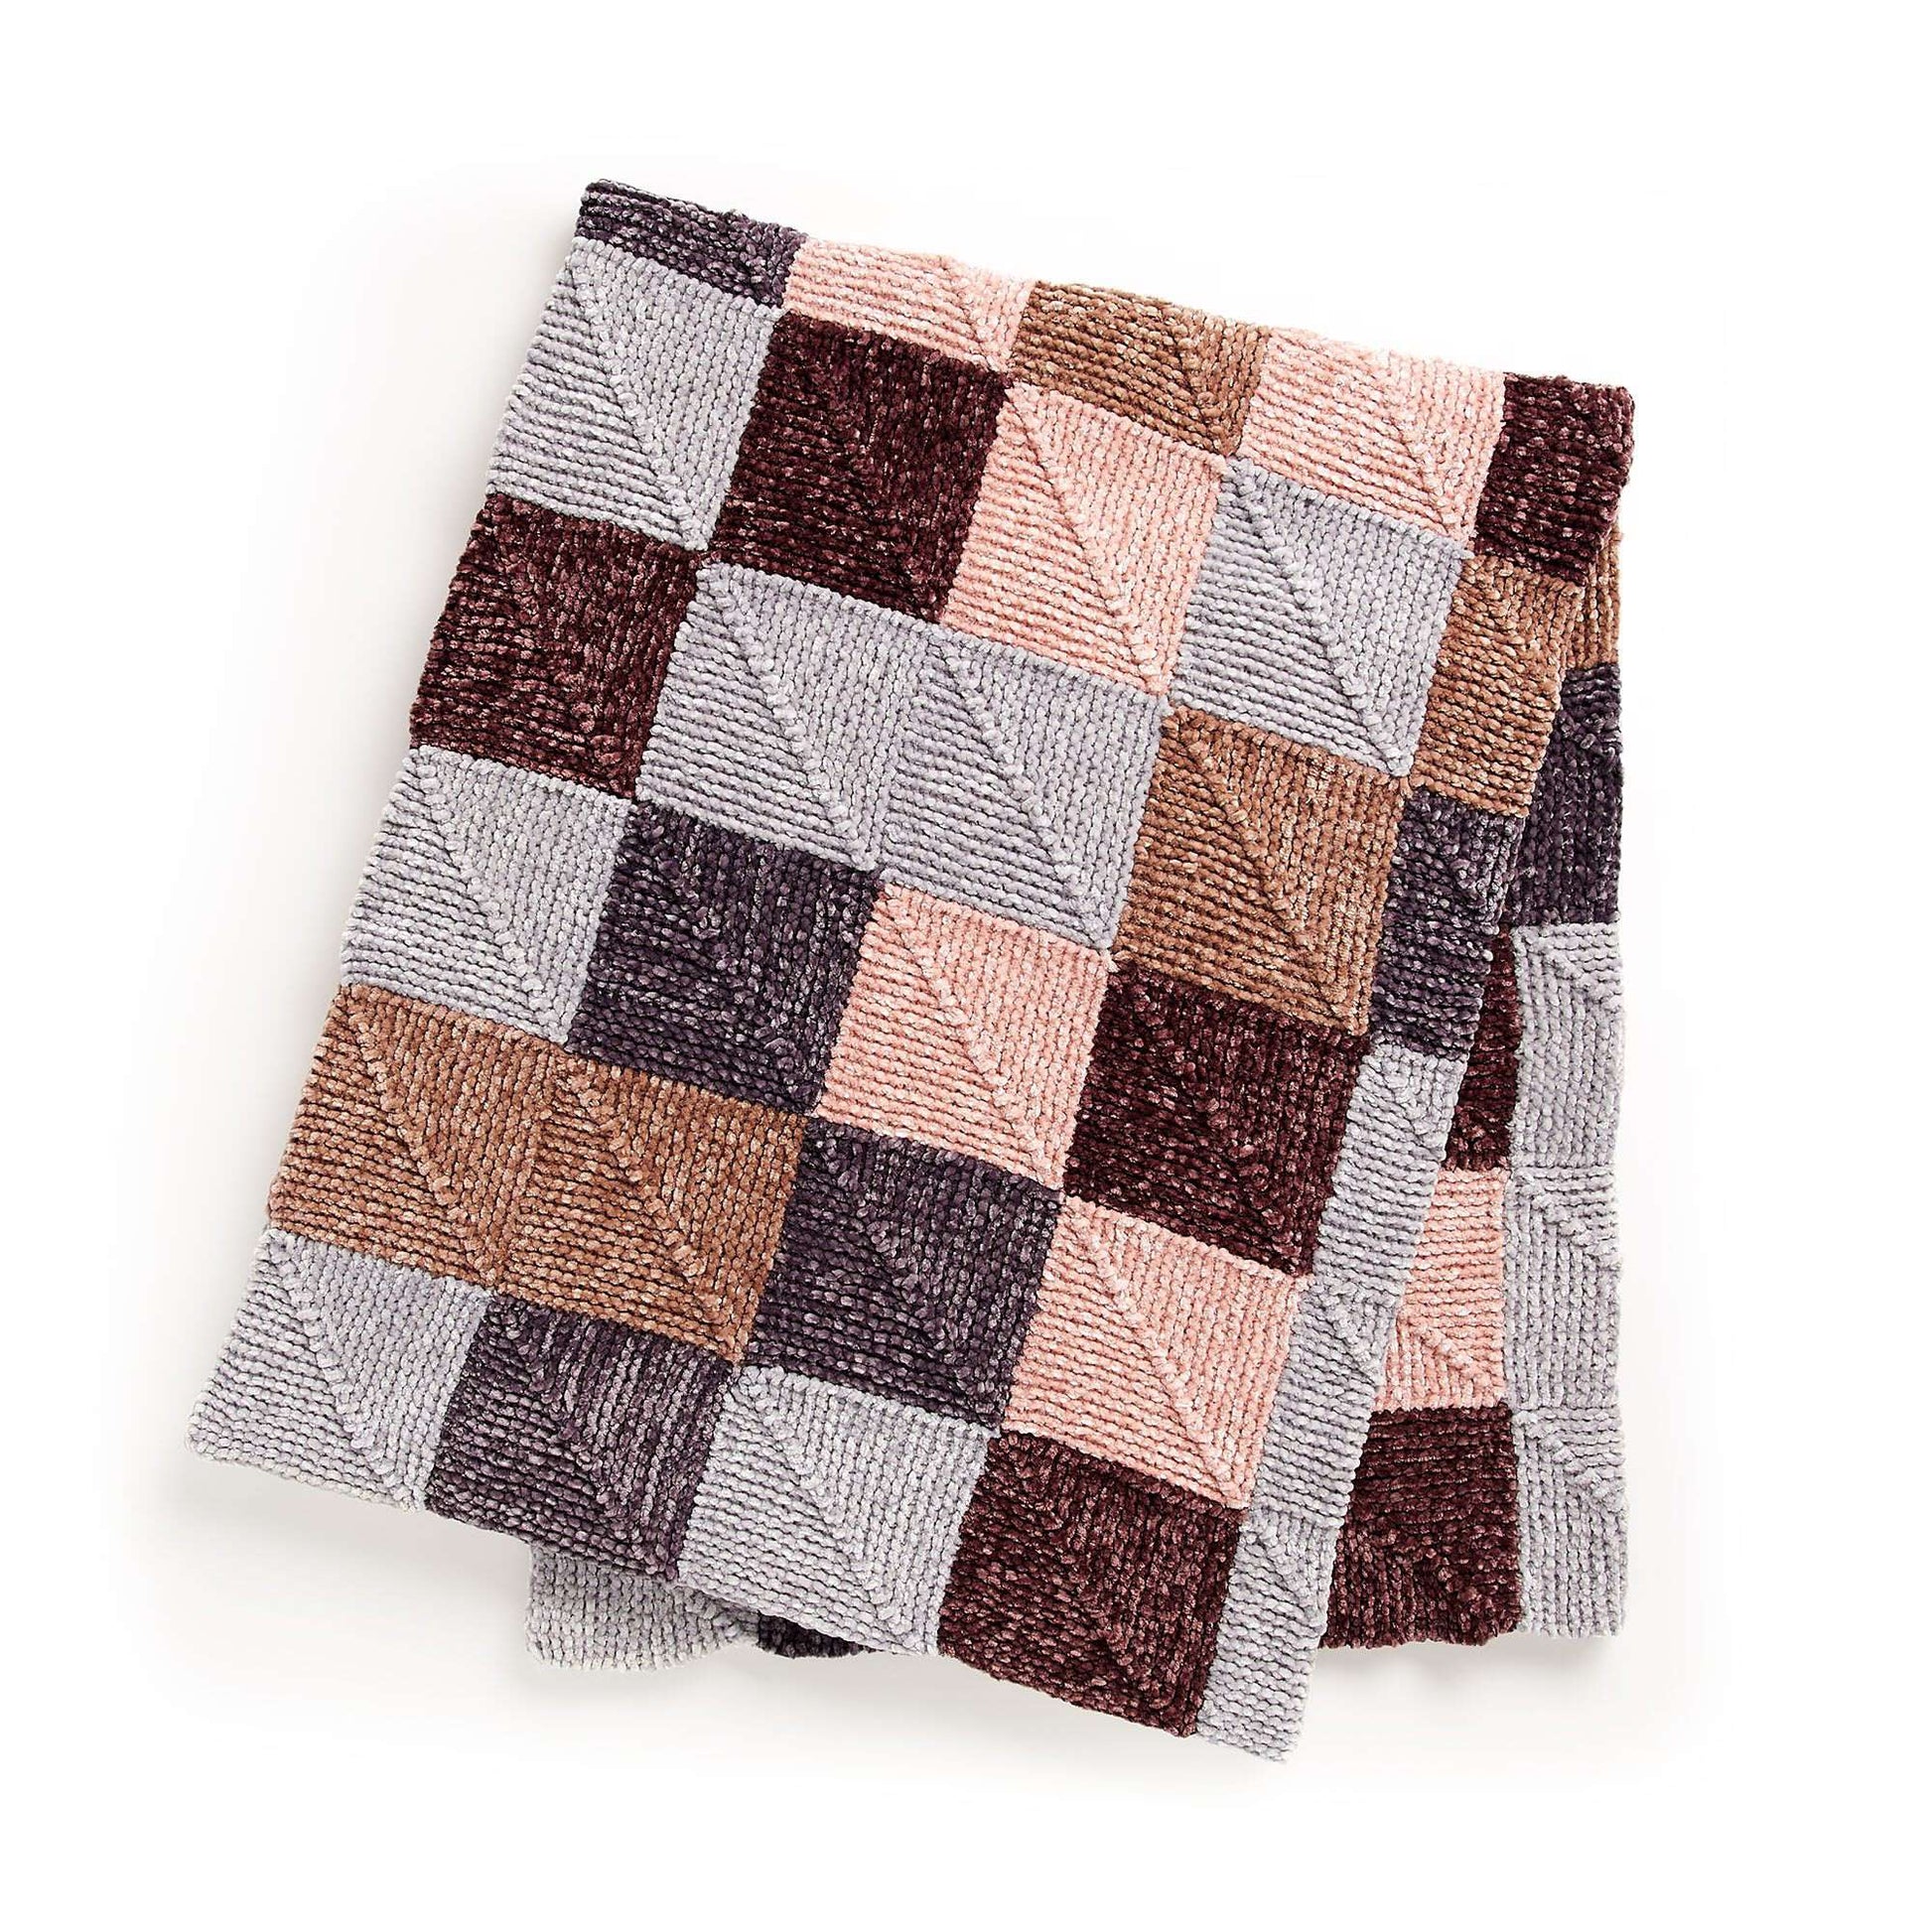 Free Bernat Just Keep Knitting Mitered Squares Knit Blanket Pattern